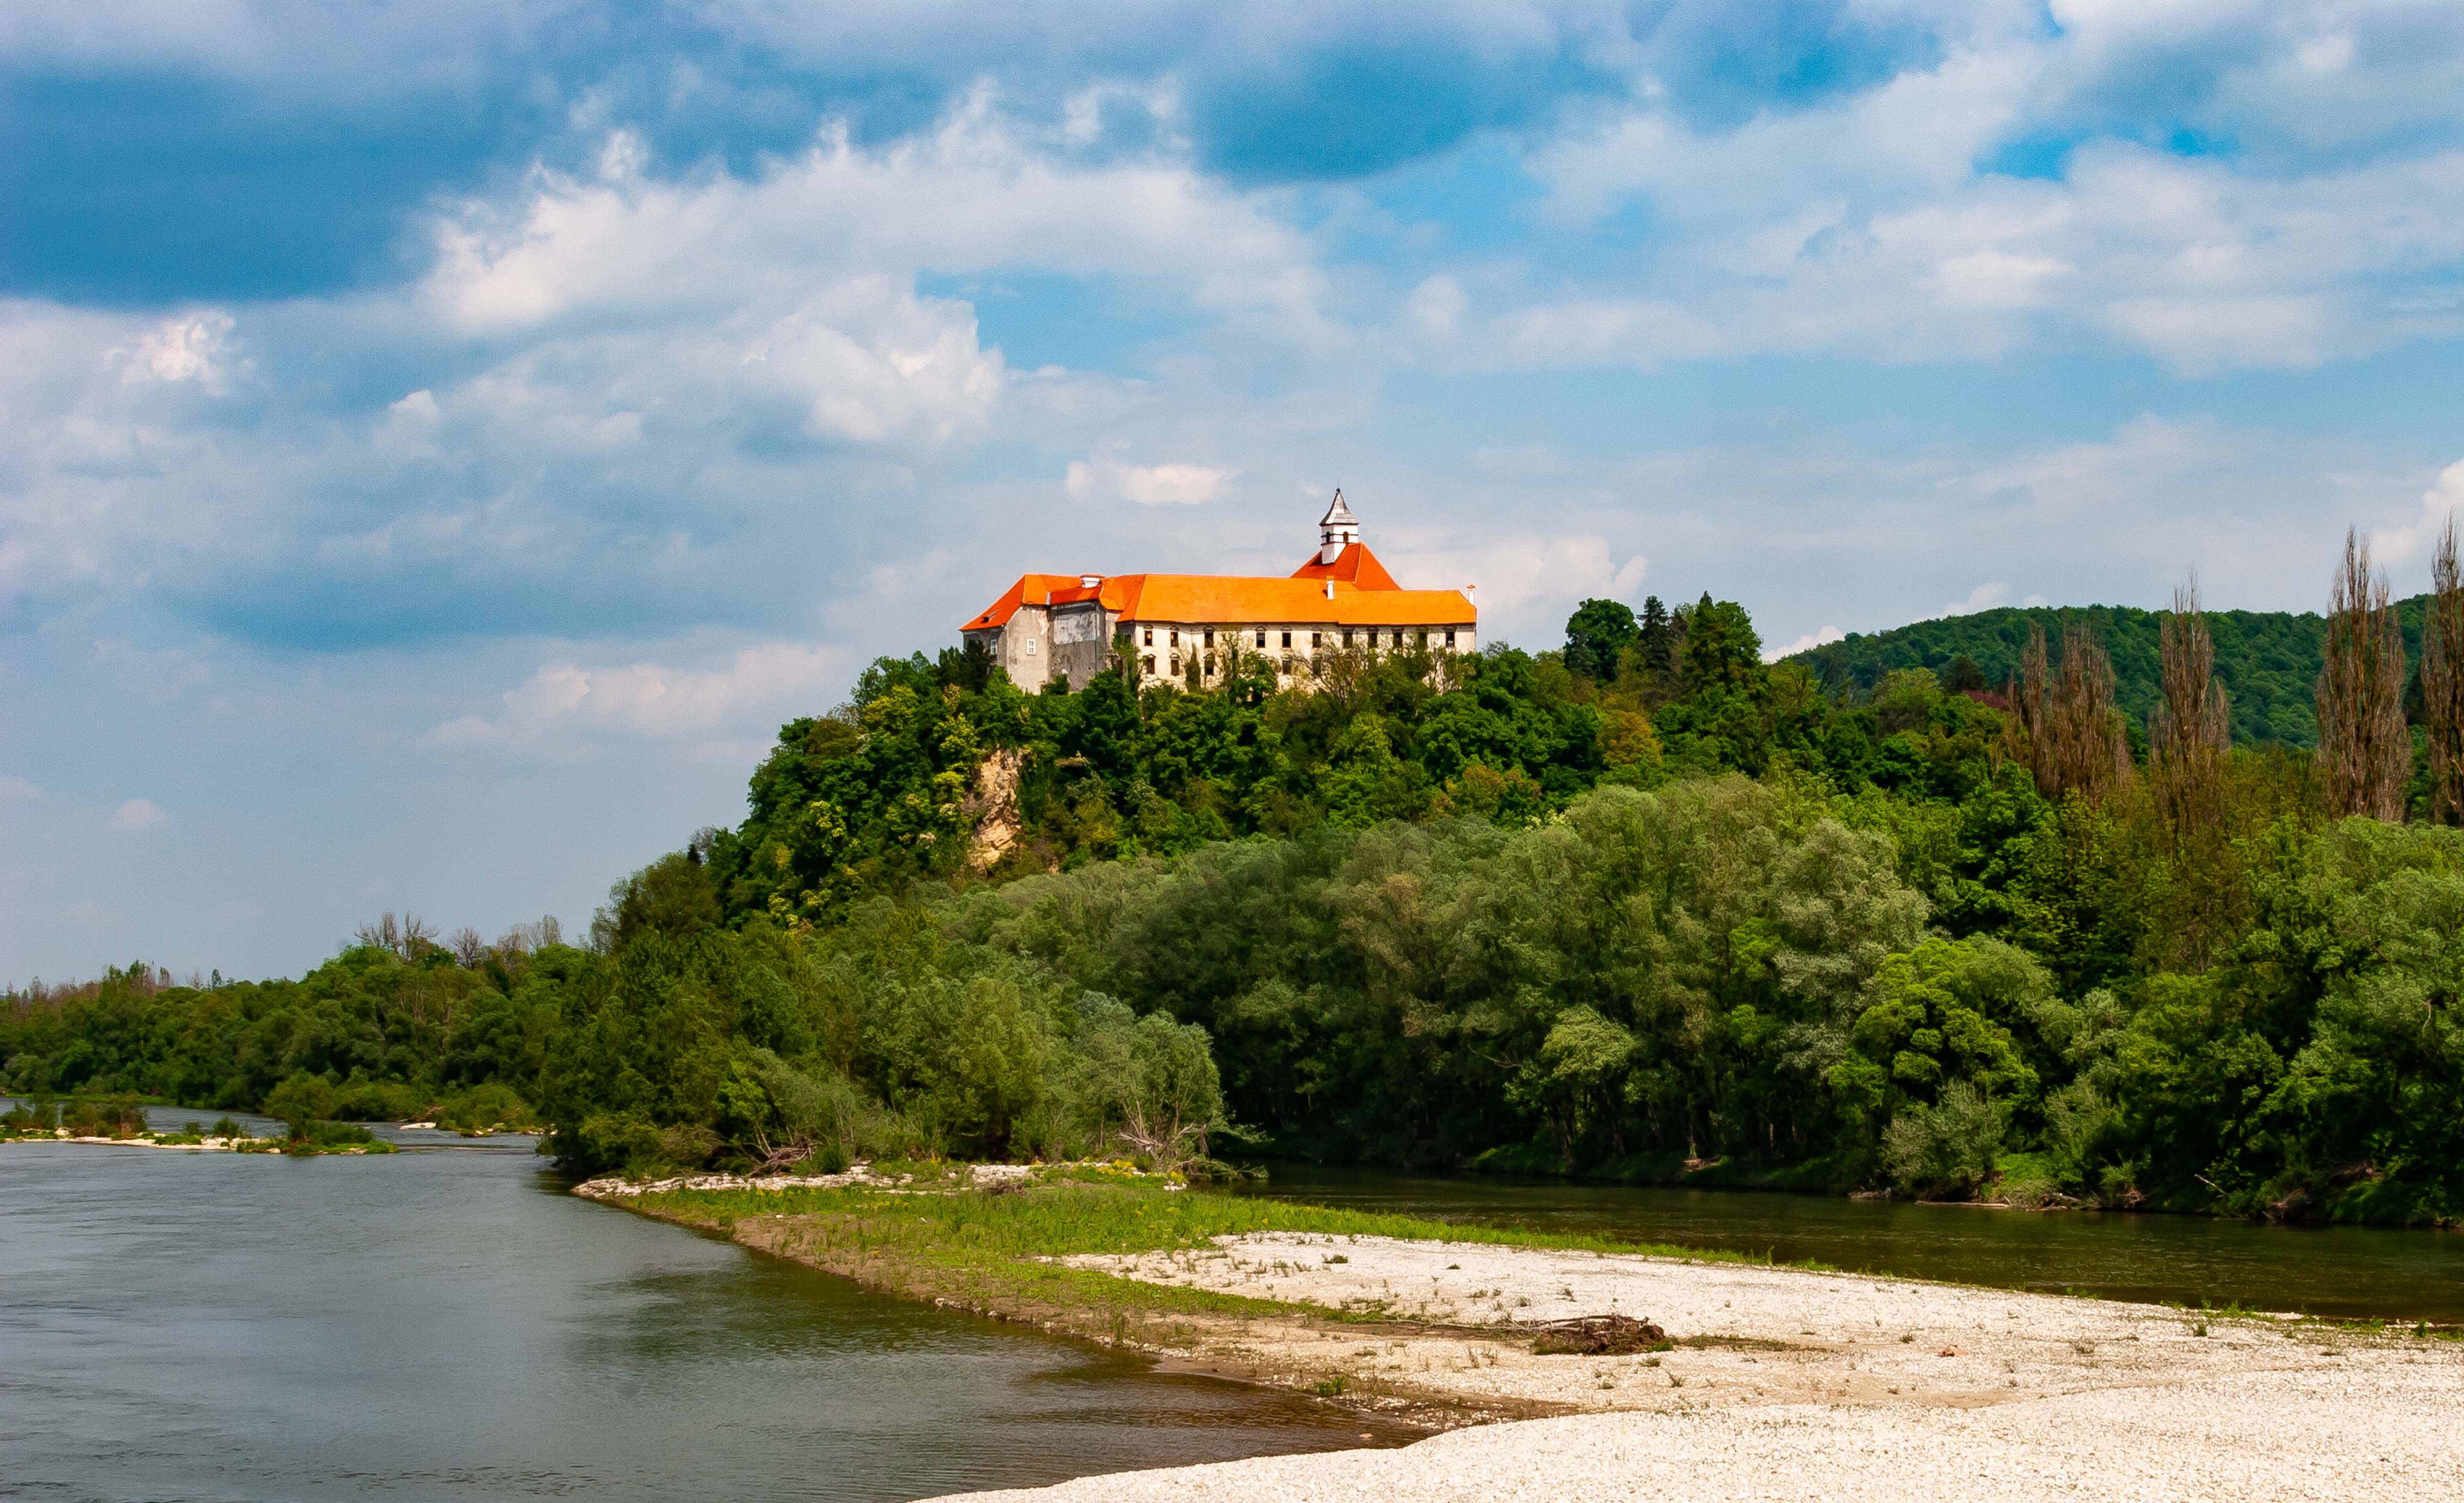 Slovenia, Gorisnica Prov, River And Building, 2006, IMG 5409